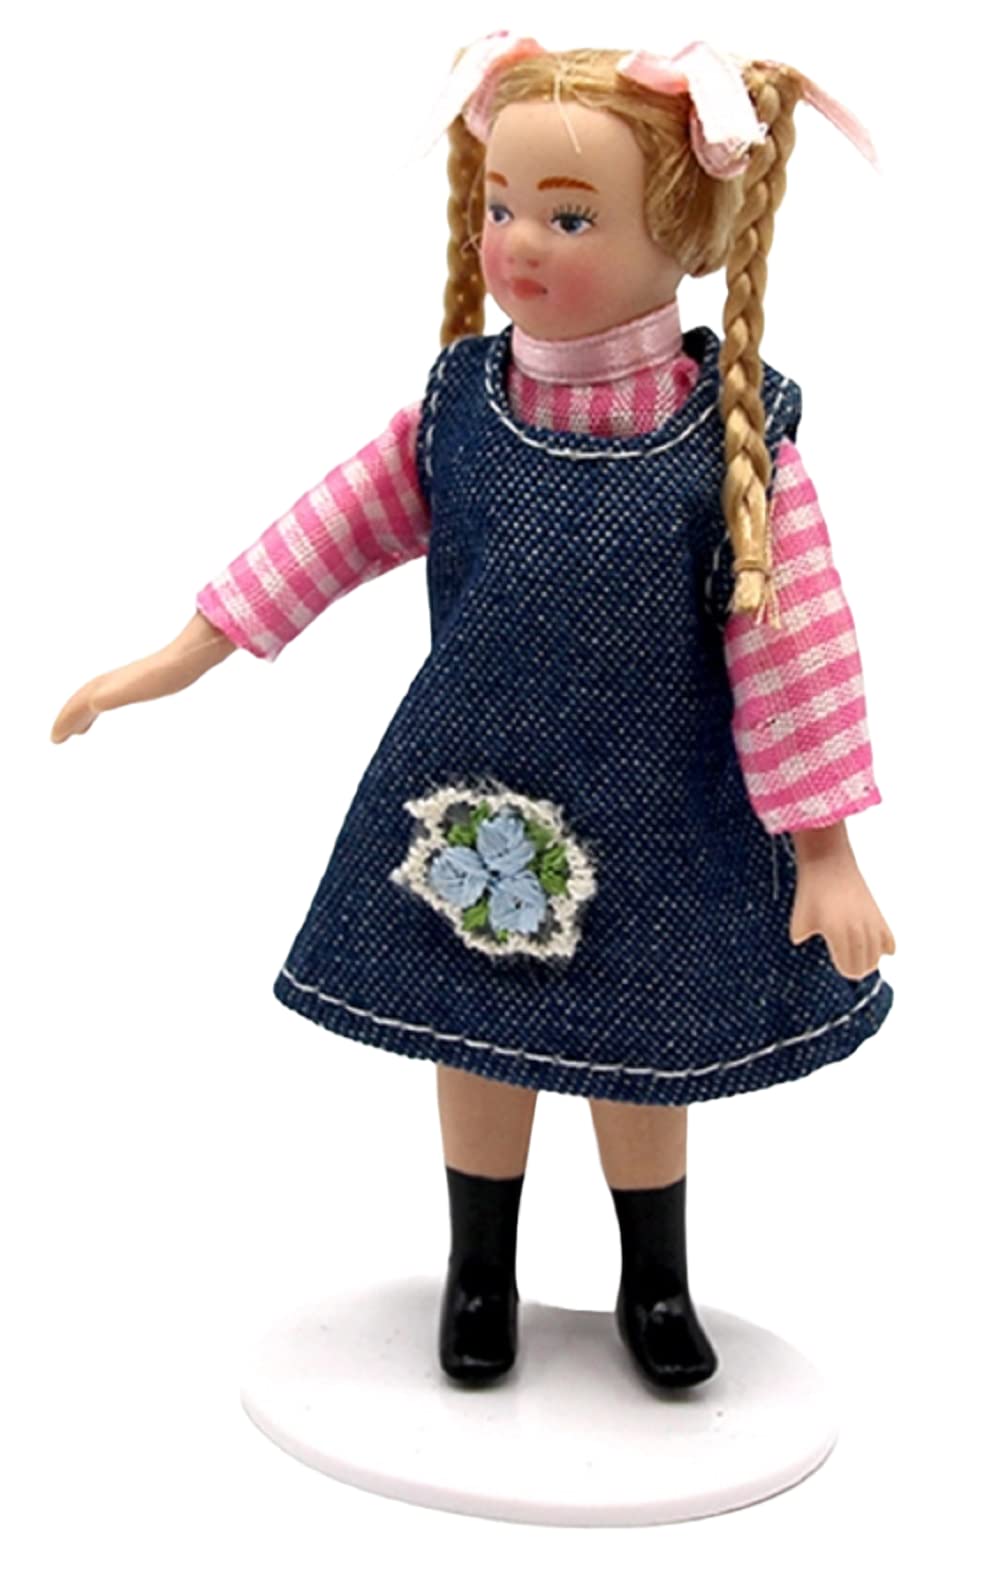 Melody Jane Dollhouse Little Girl Blonde in Denim Dress Modern Figure Porcelain People